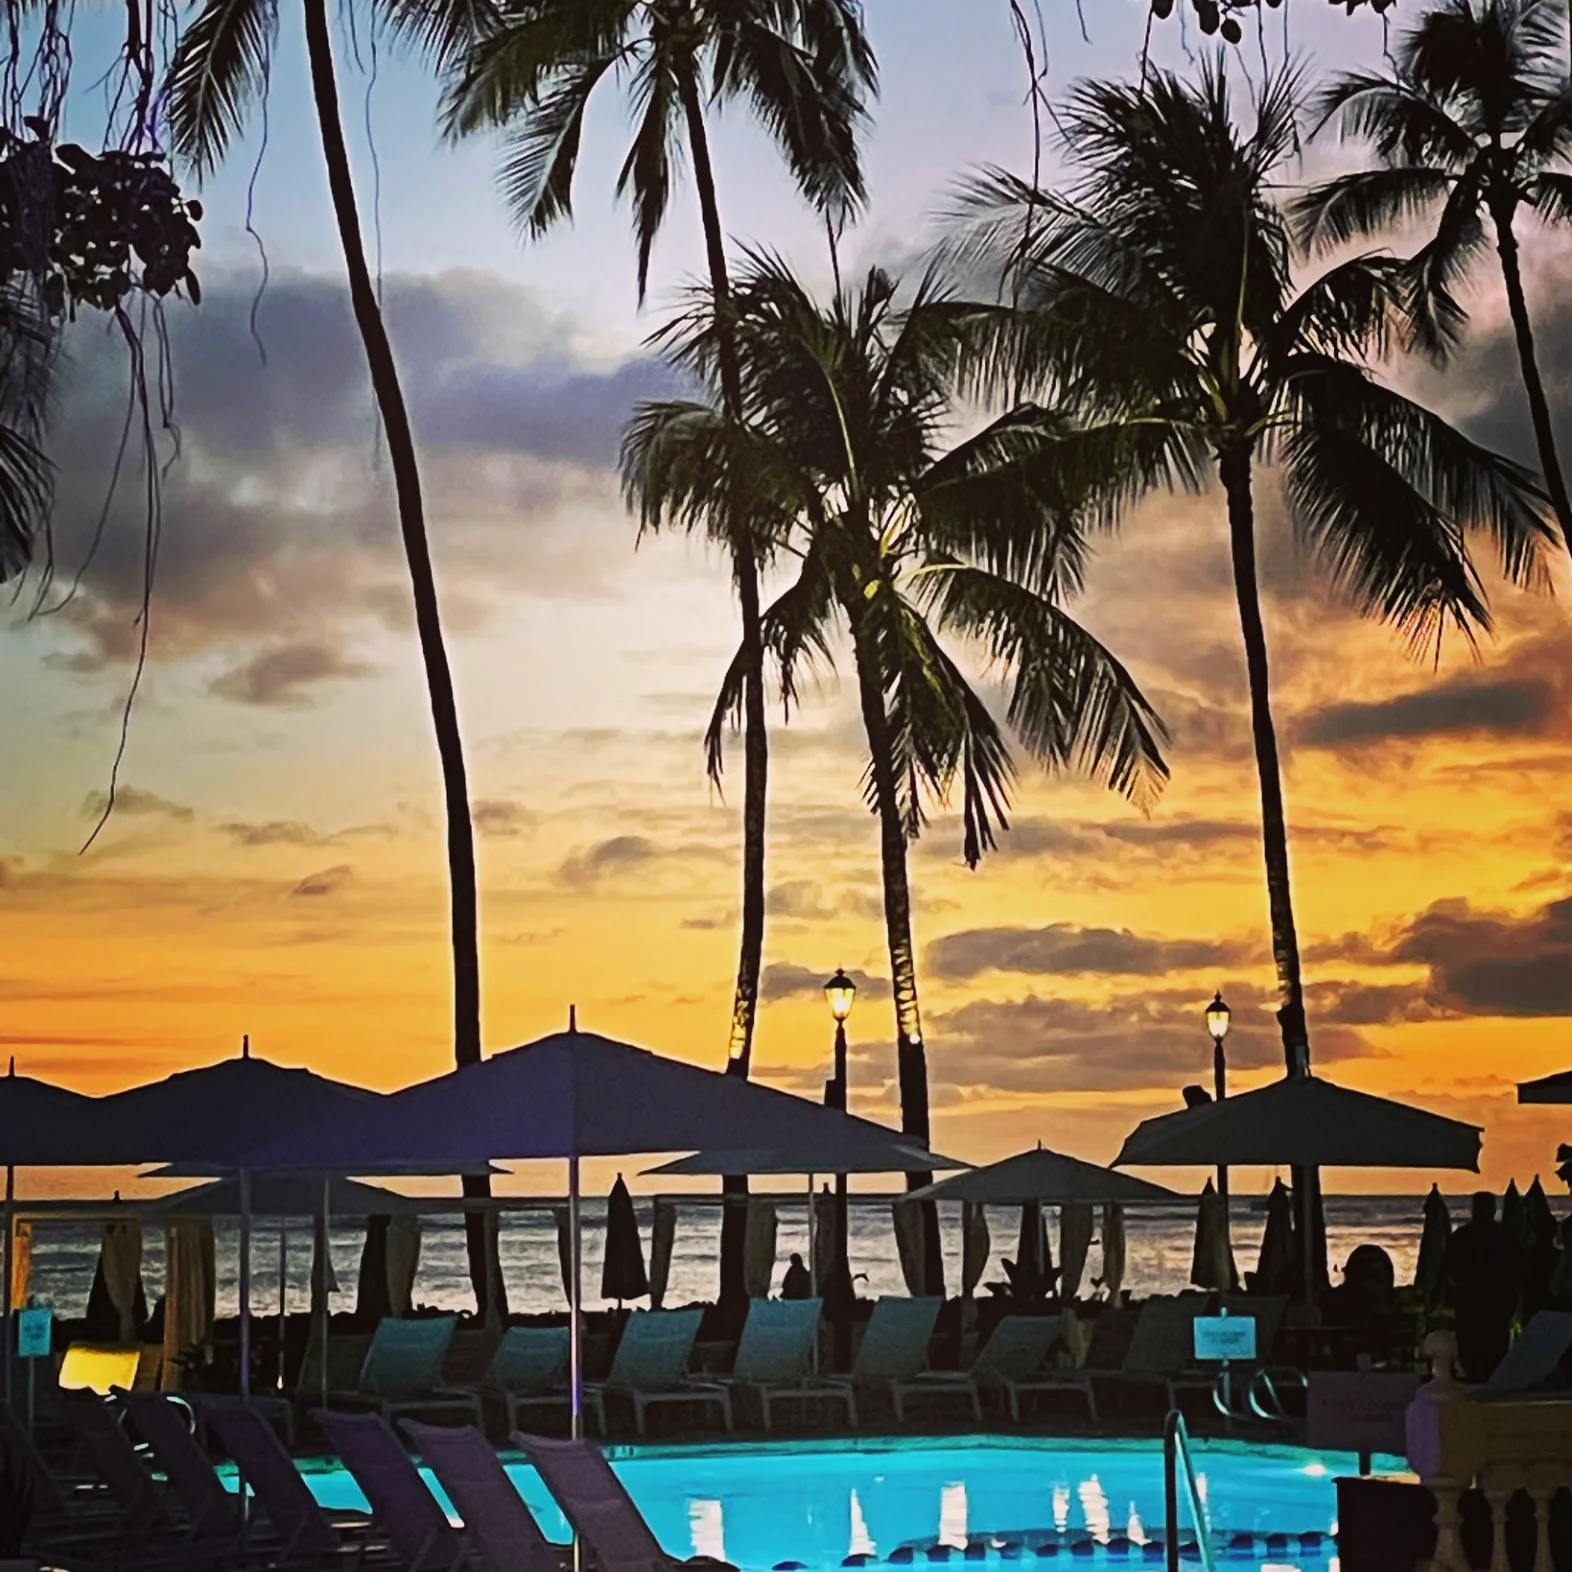 Waikiki Hawaii sunset view from Moana Surfrider Hotel